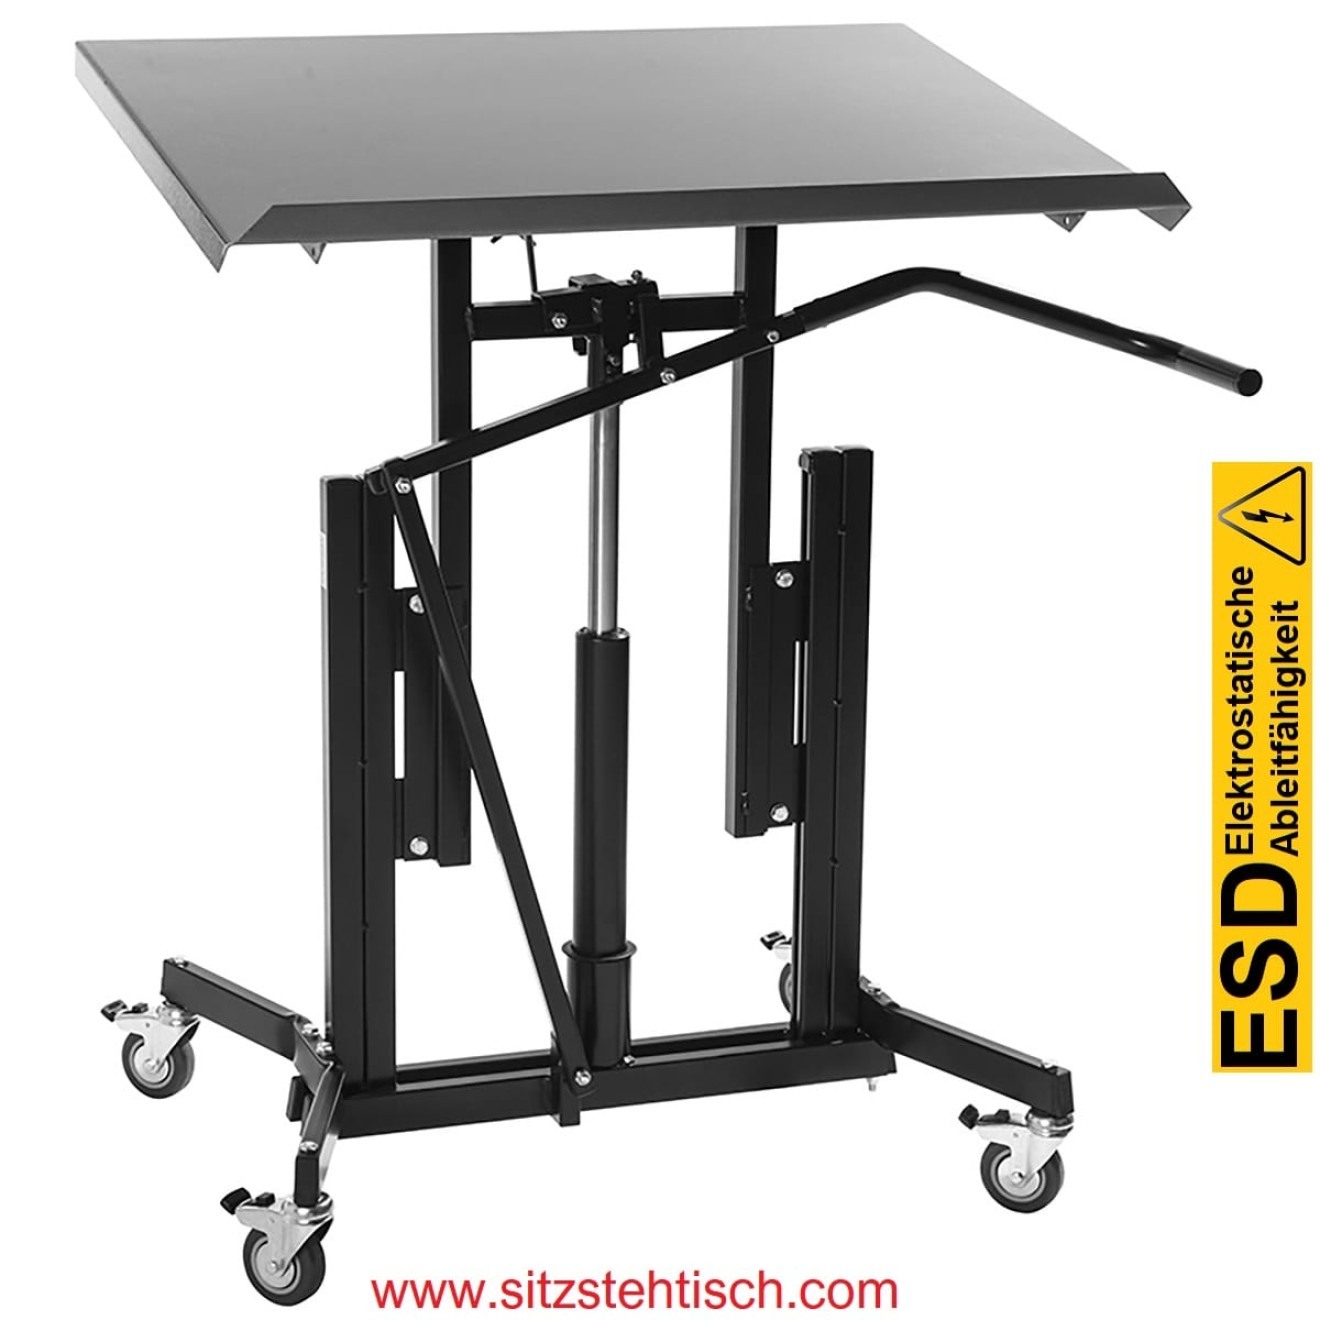 ESD Arbeitstisch - Montagetisch - Midi - Tischplatte 800 x 600 mm - Neigungswinkel Tischplatte 0°- 30° Grad verstellbar - Höhenverstellung von 730 - 980 mm - 4 elektrisch leitfähige Lenkrollen Ø 75 mm mit Bremsen - 5 Jahre Garantie